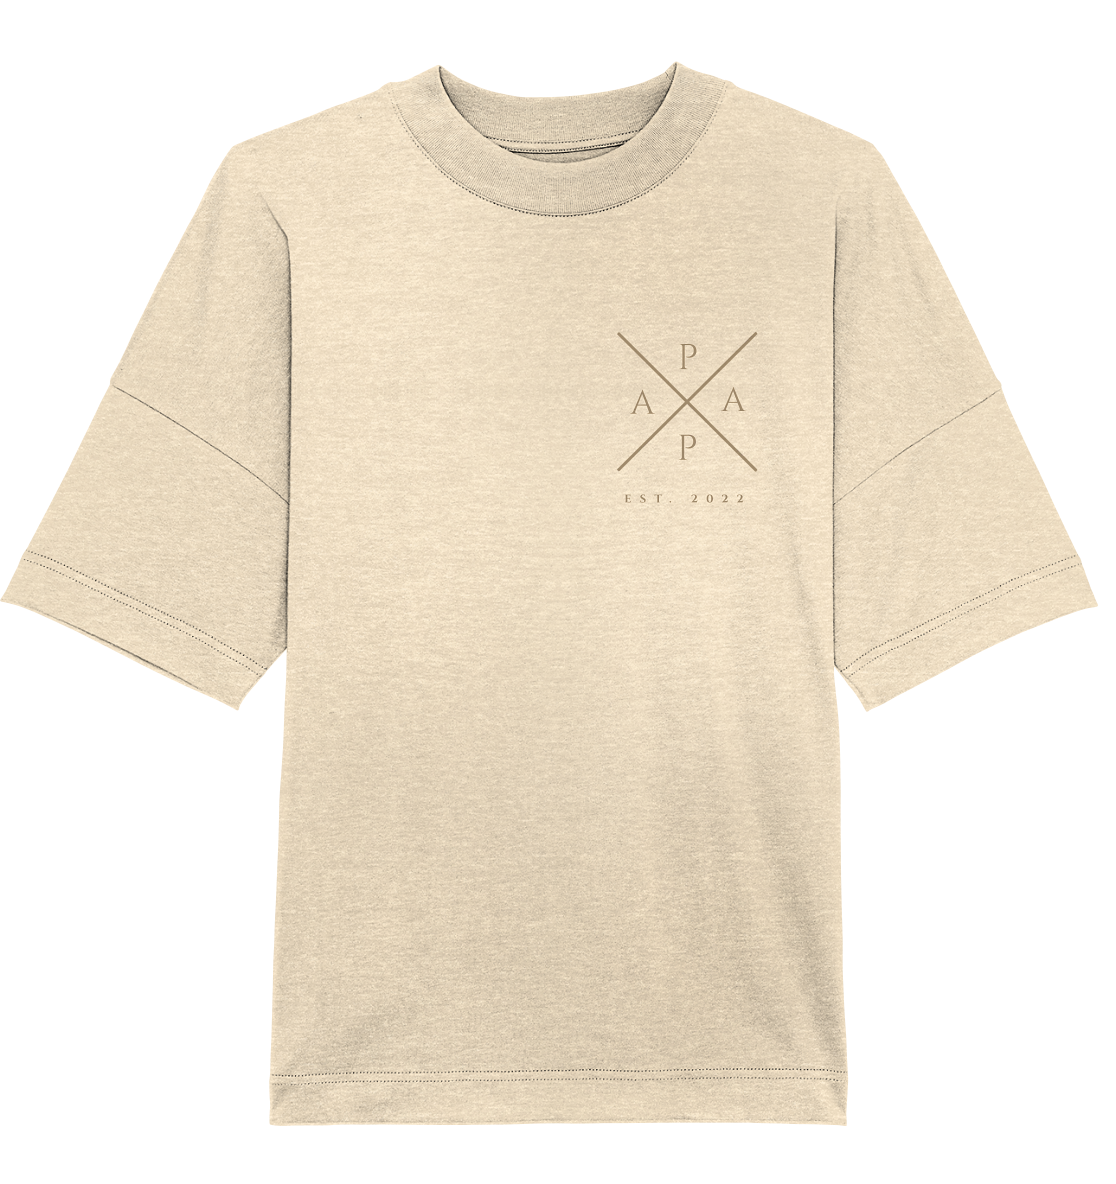 Papa Cross Oversized Shirt - date customizable - 100% organic cotton